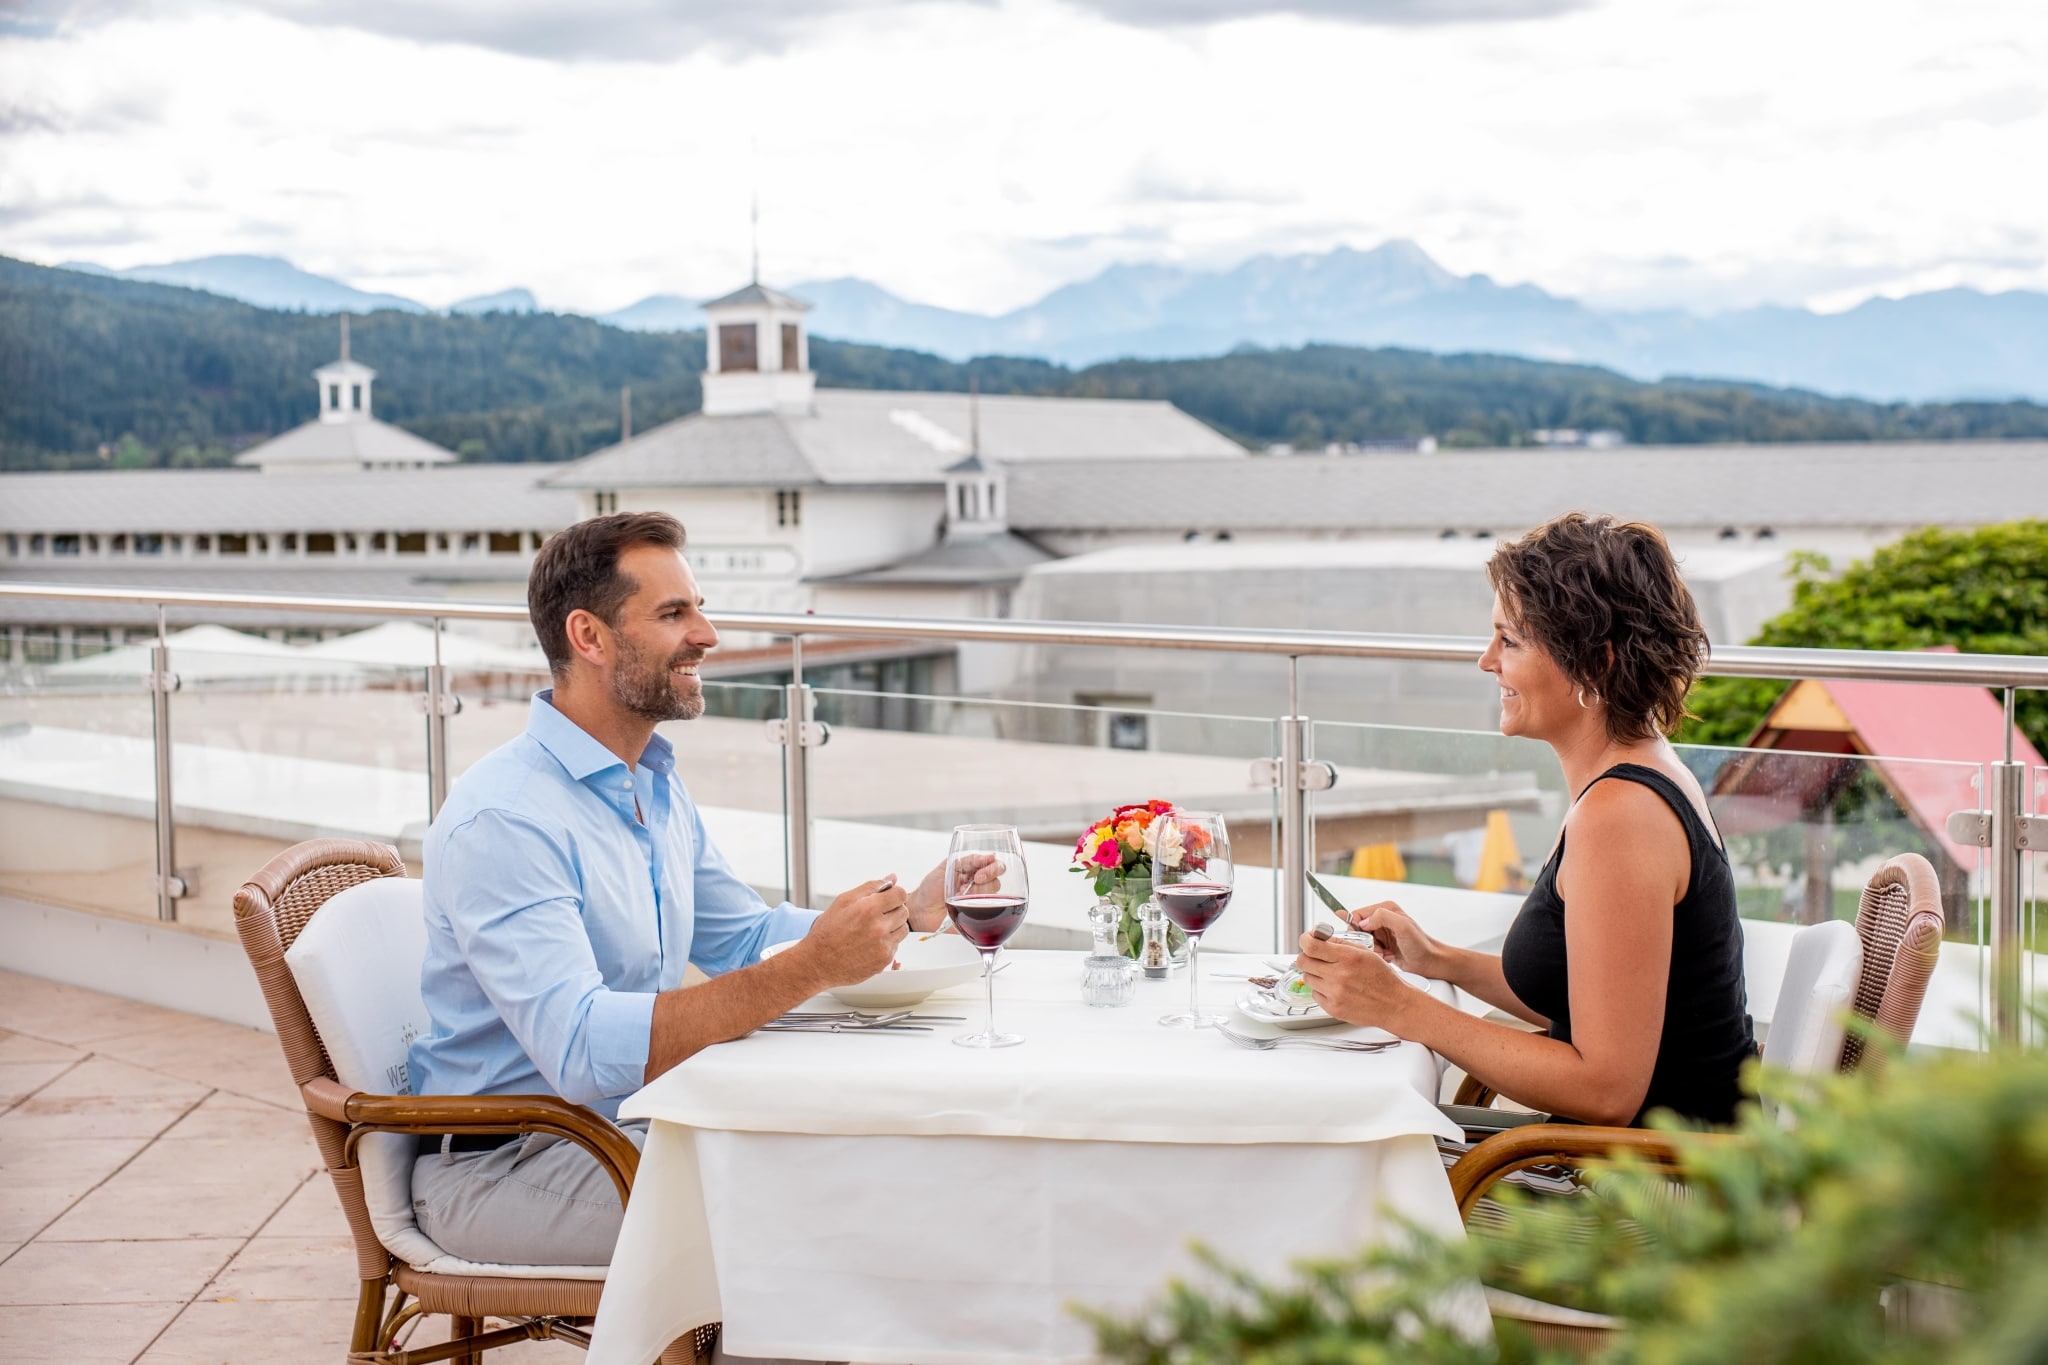 Dinner bei Wein und Seeblick im Panorama-Seerestaurant mit Karawanken im Hintergrund.